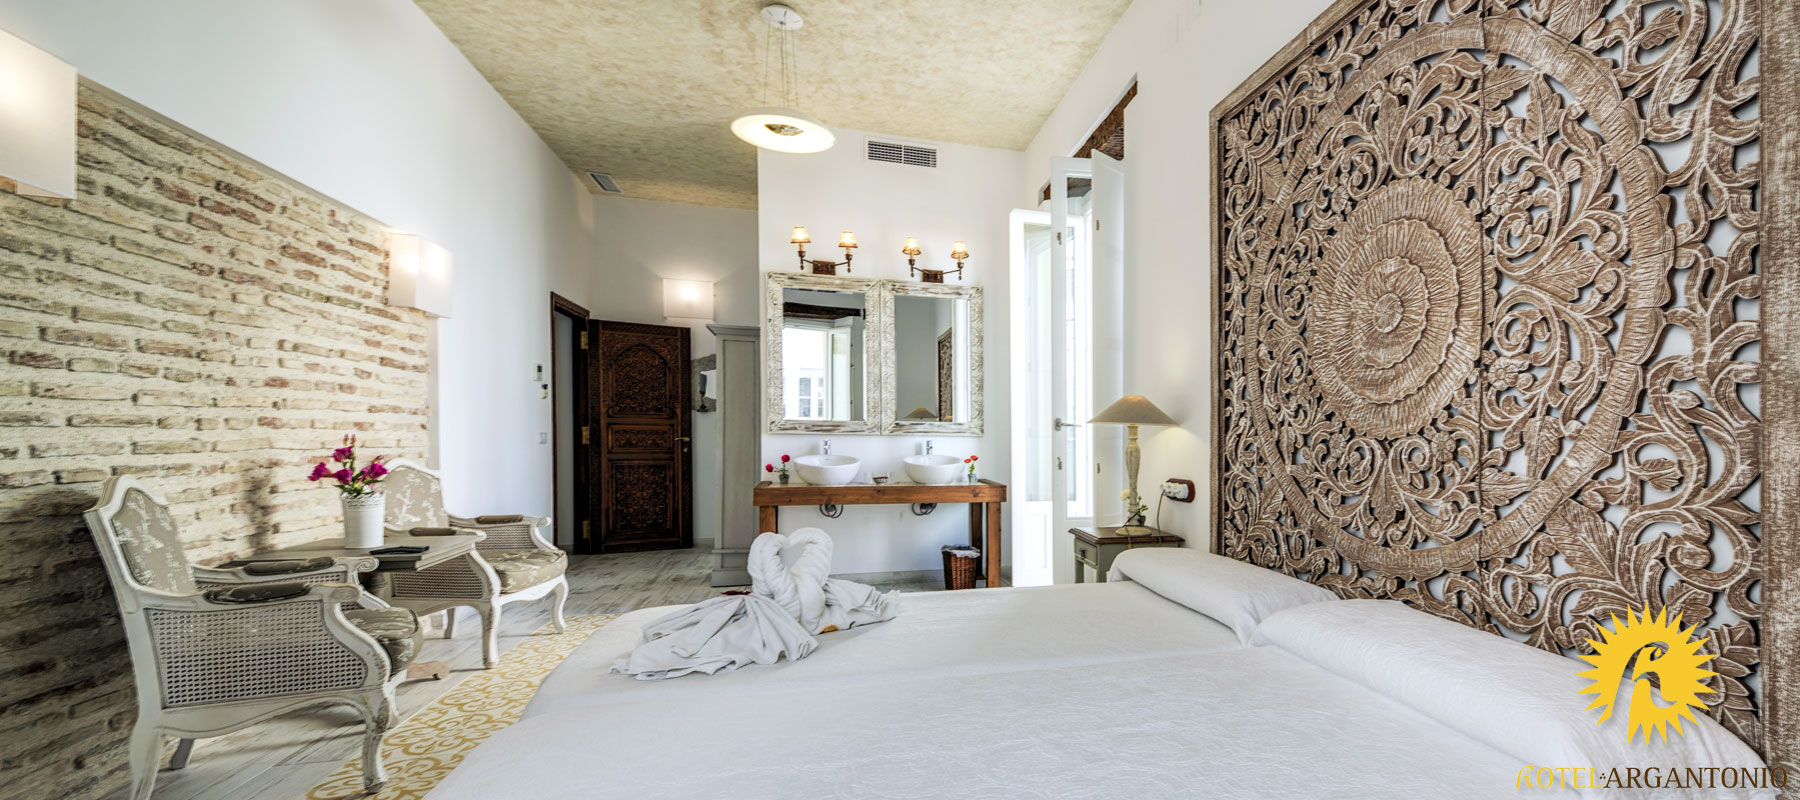 Superior double room - Argantonio Hotel in Cadiz